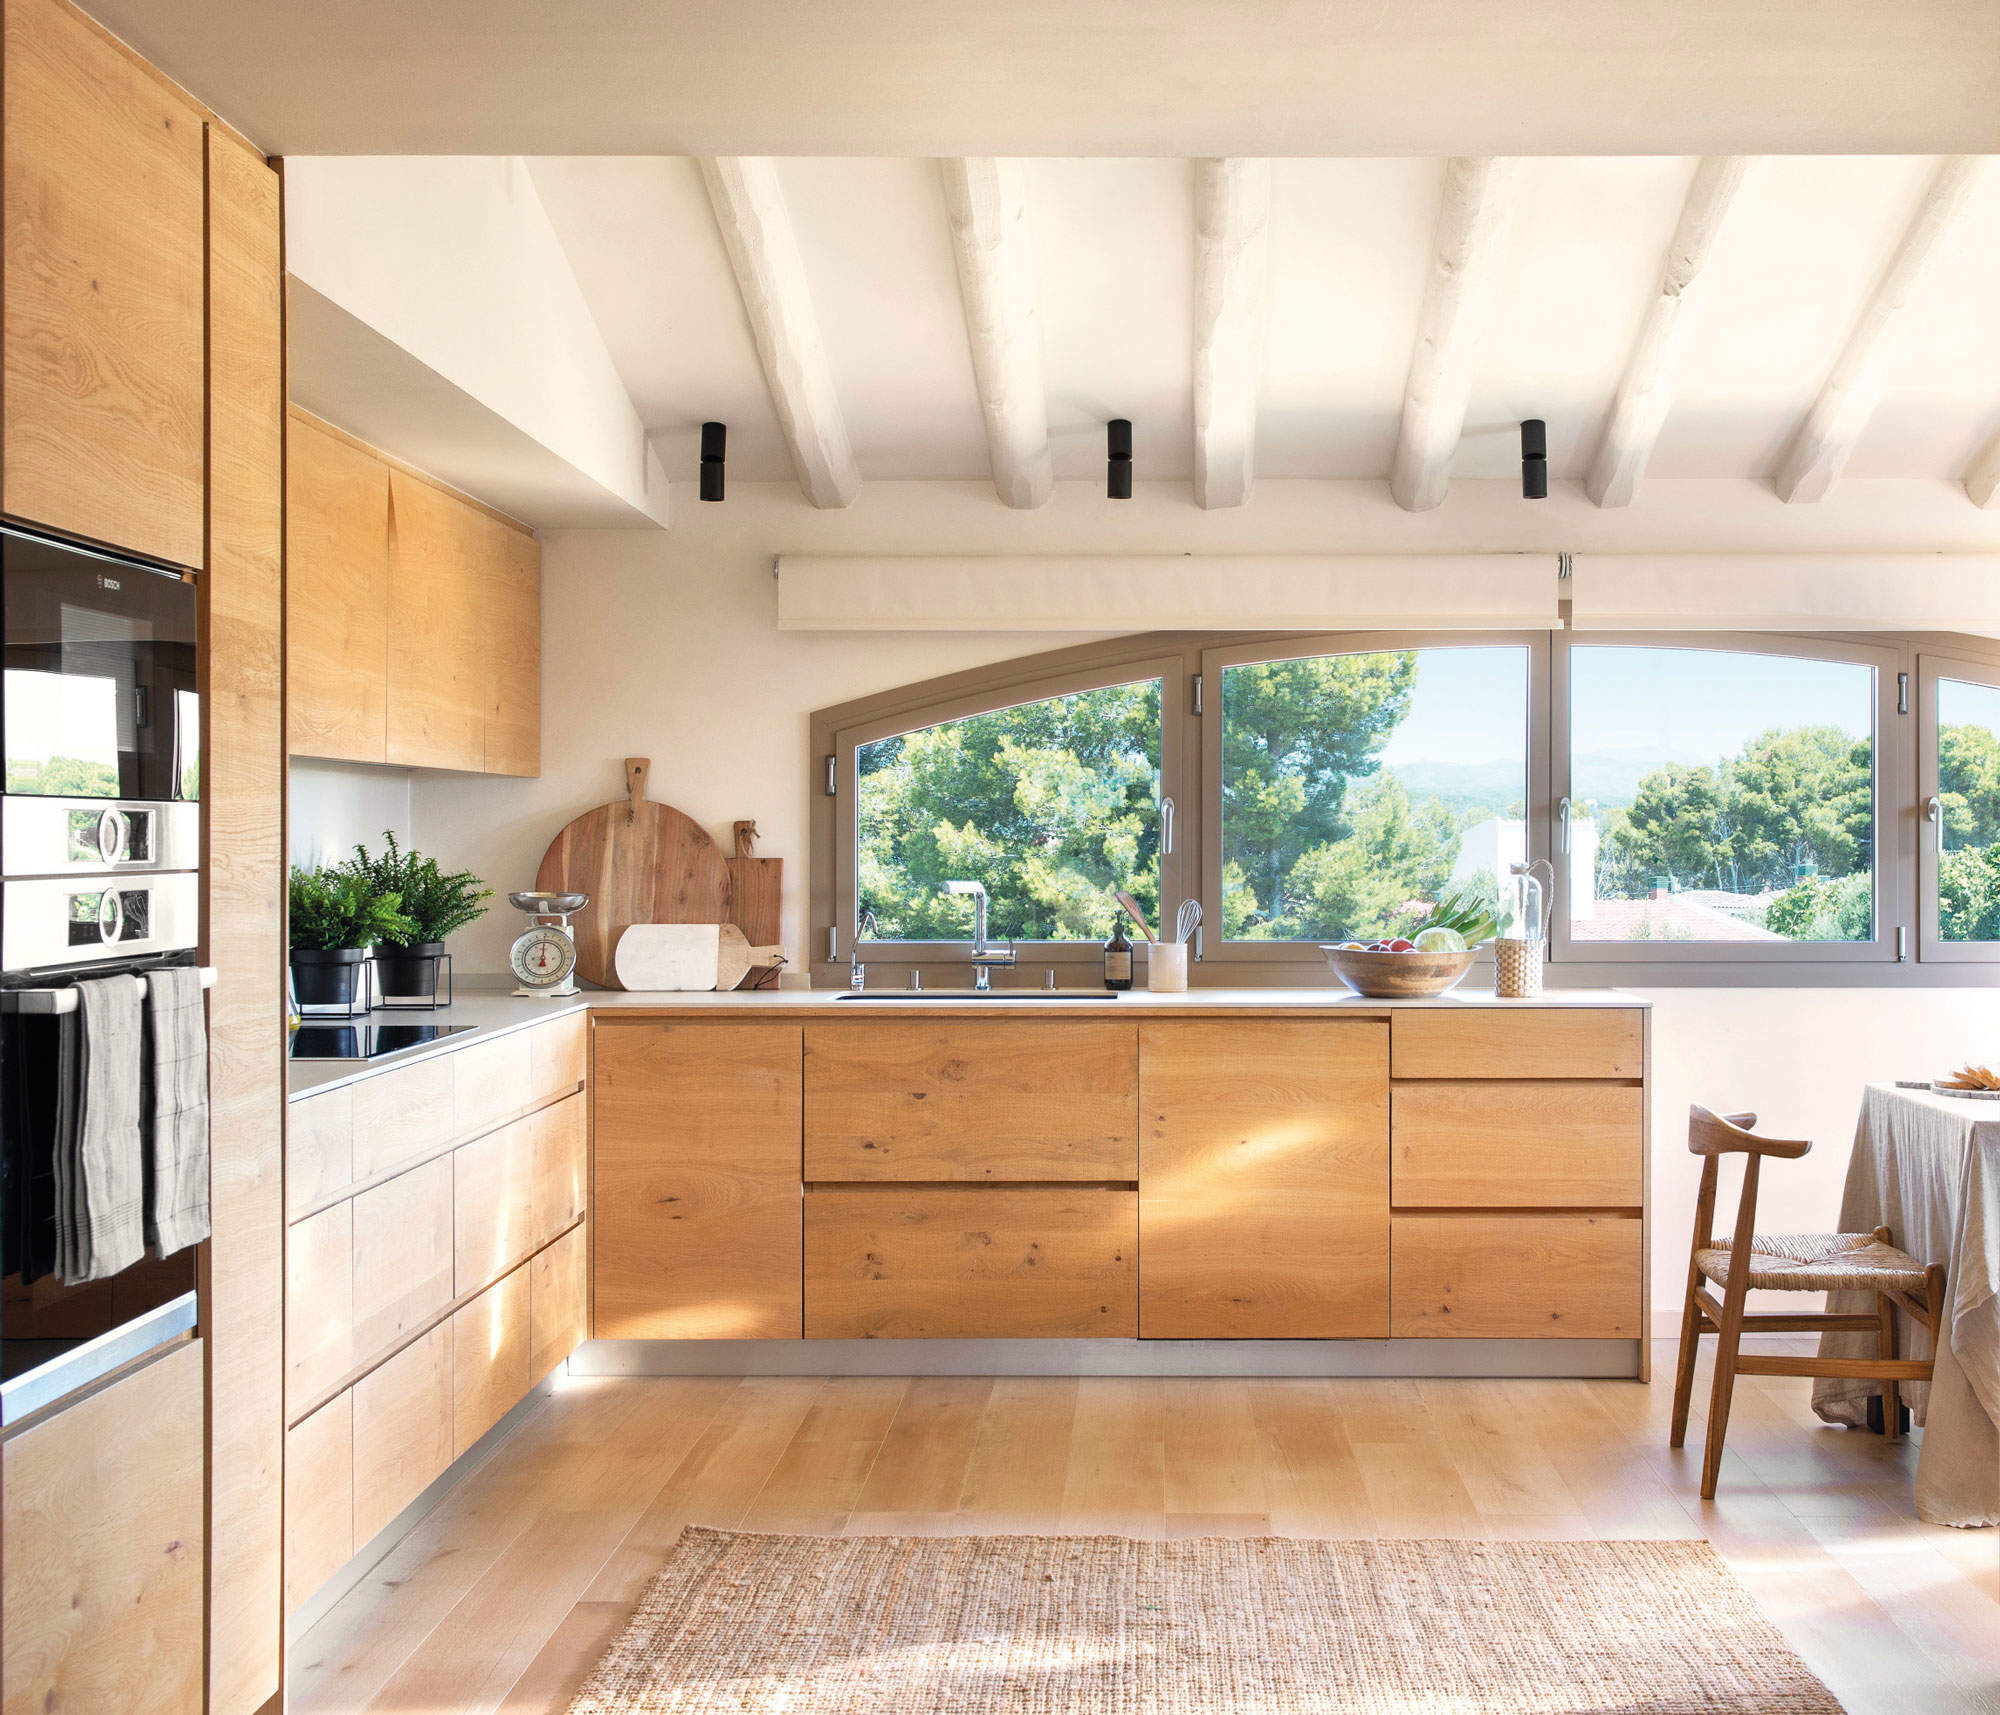 Cocina con ventana de semiarco, muebles de madera natural y vigas blancas a la vista.